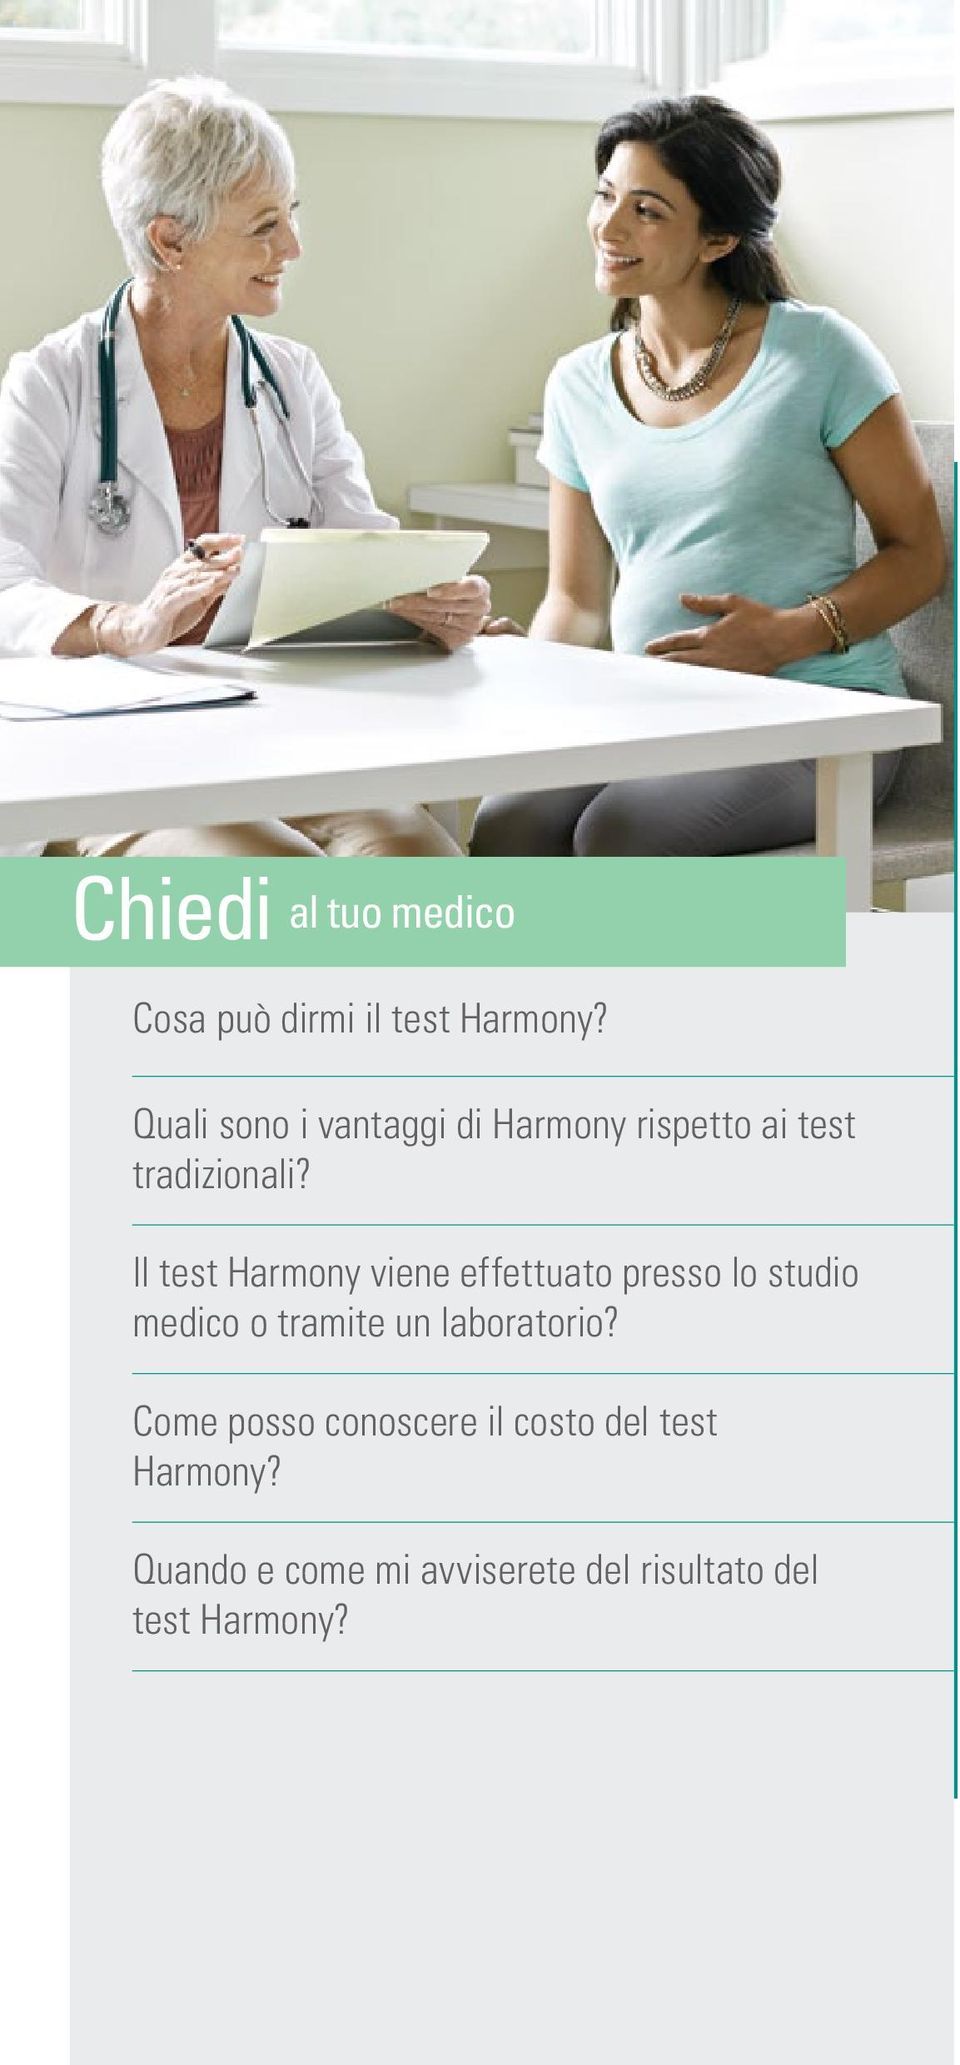 Il test Harmony viene effettuato presso lo studio medico o tramite un